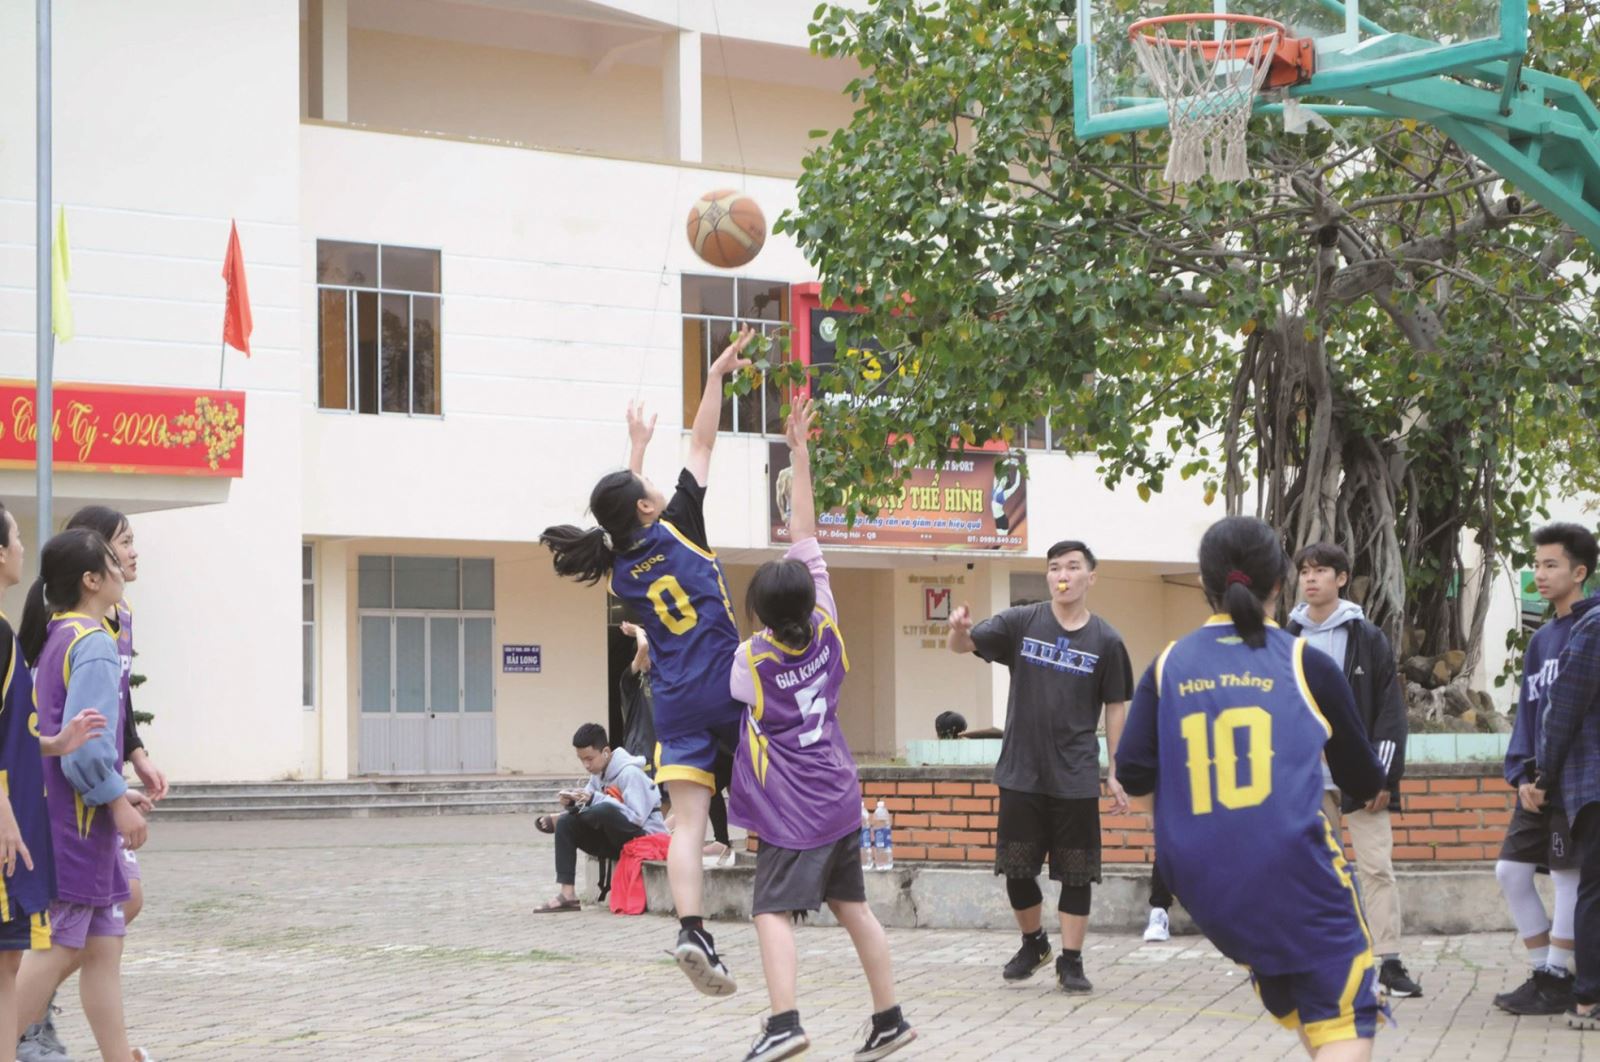 Tập luyện bóng rổ - sân chơi thể thao bổ ích cho học sinh